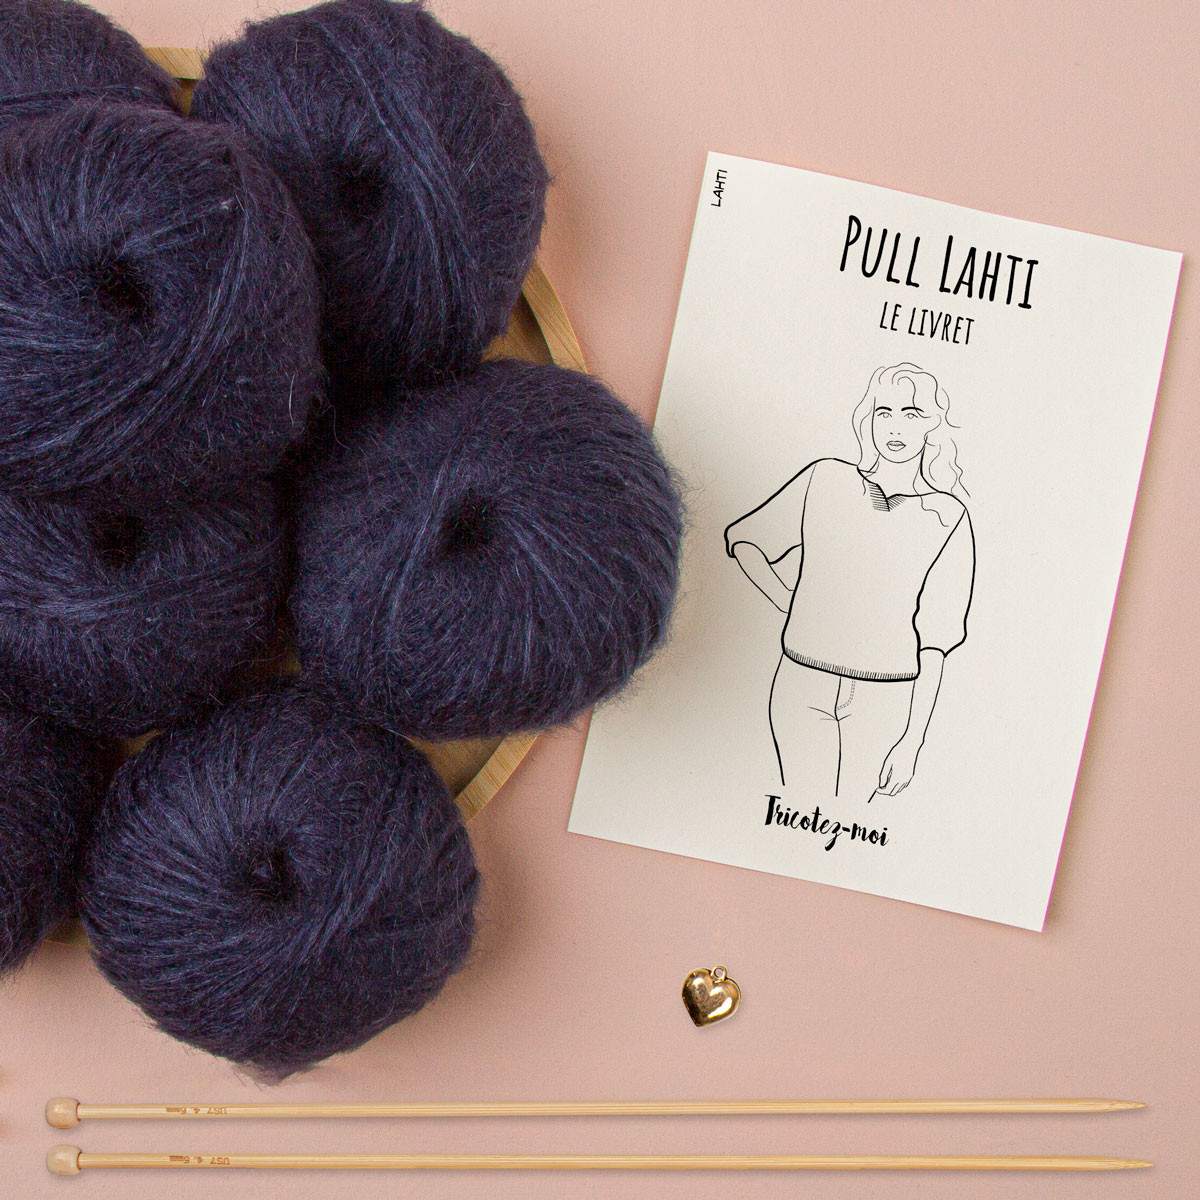 Lahti short-sleeved jumper to knit